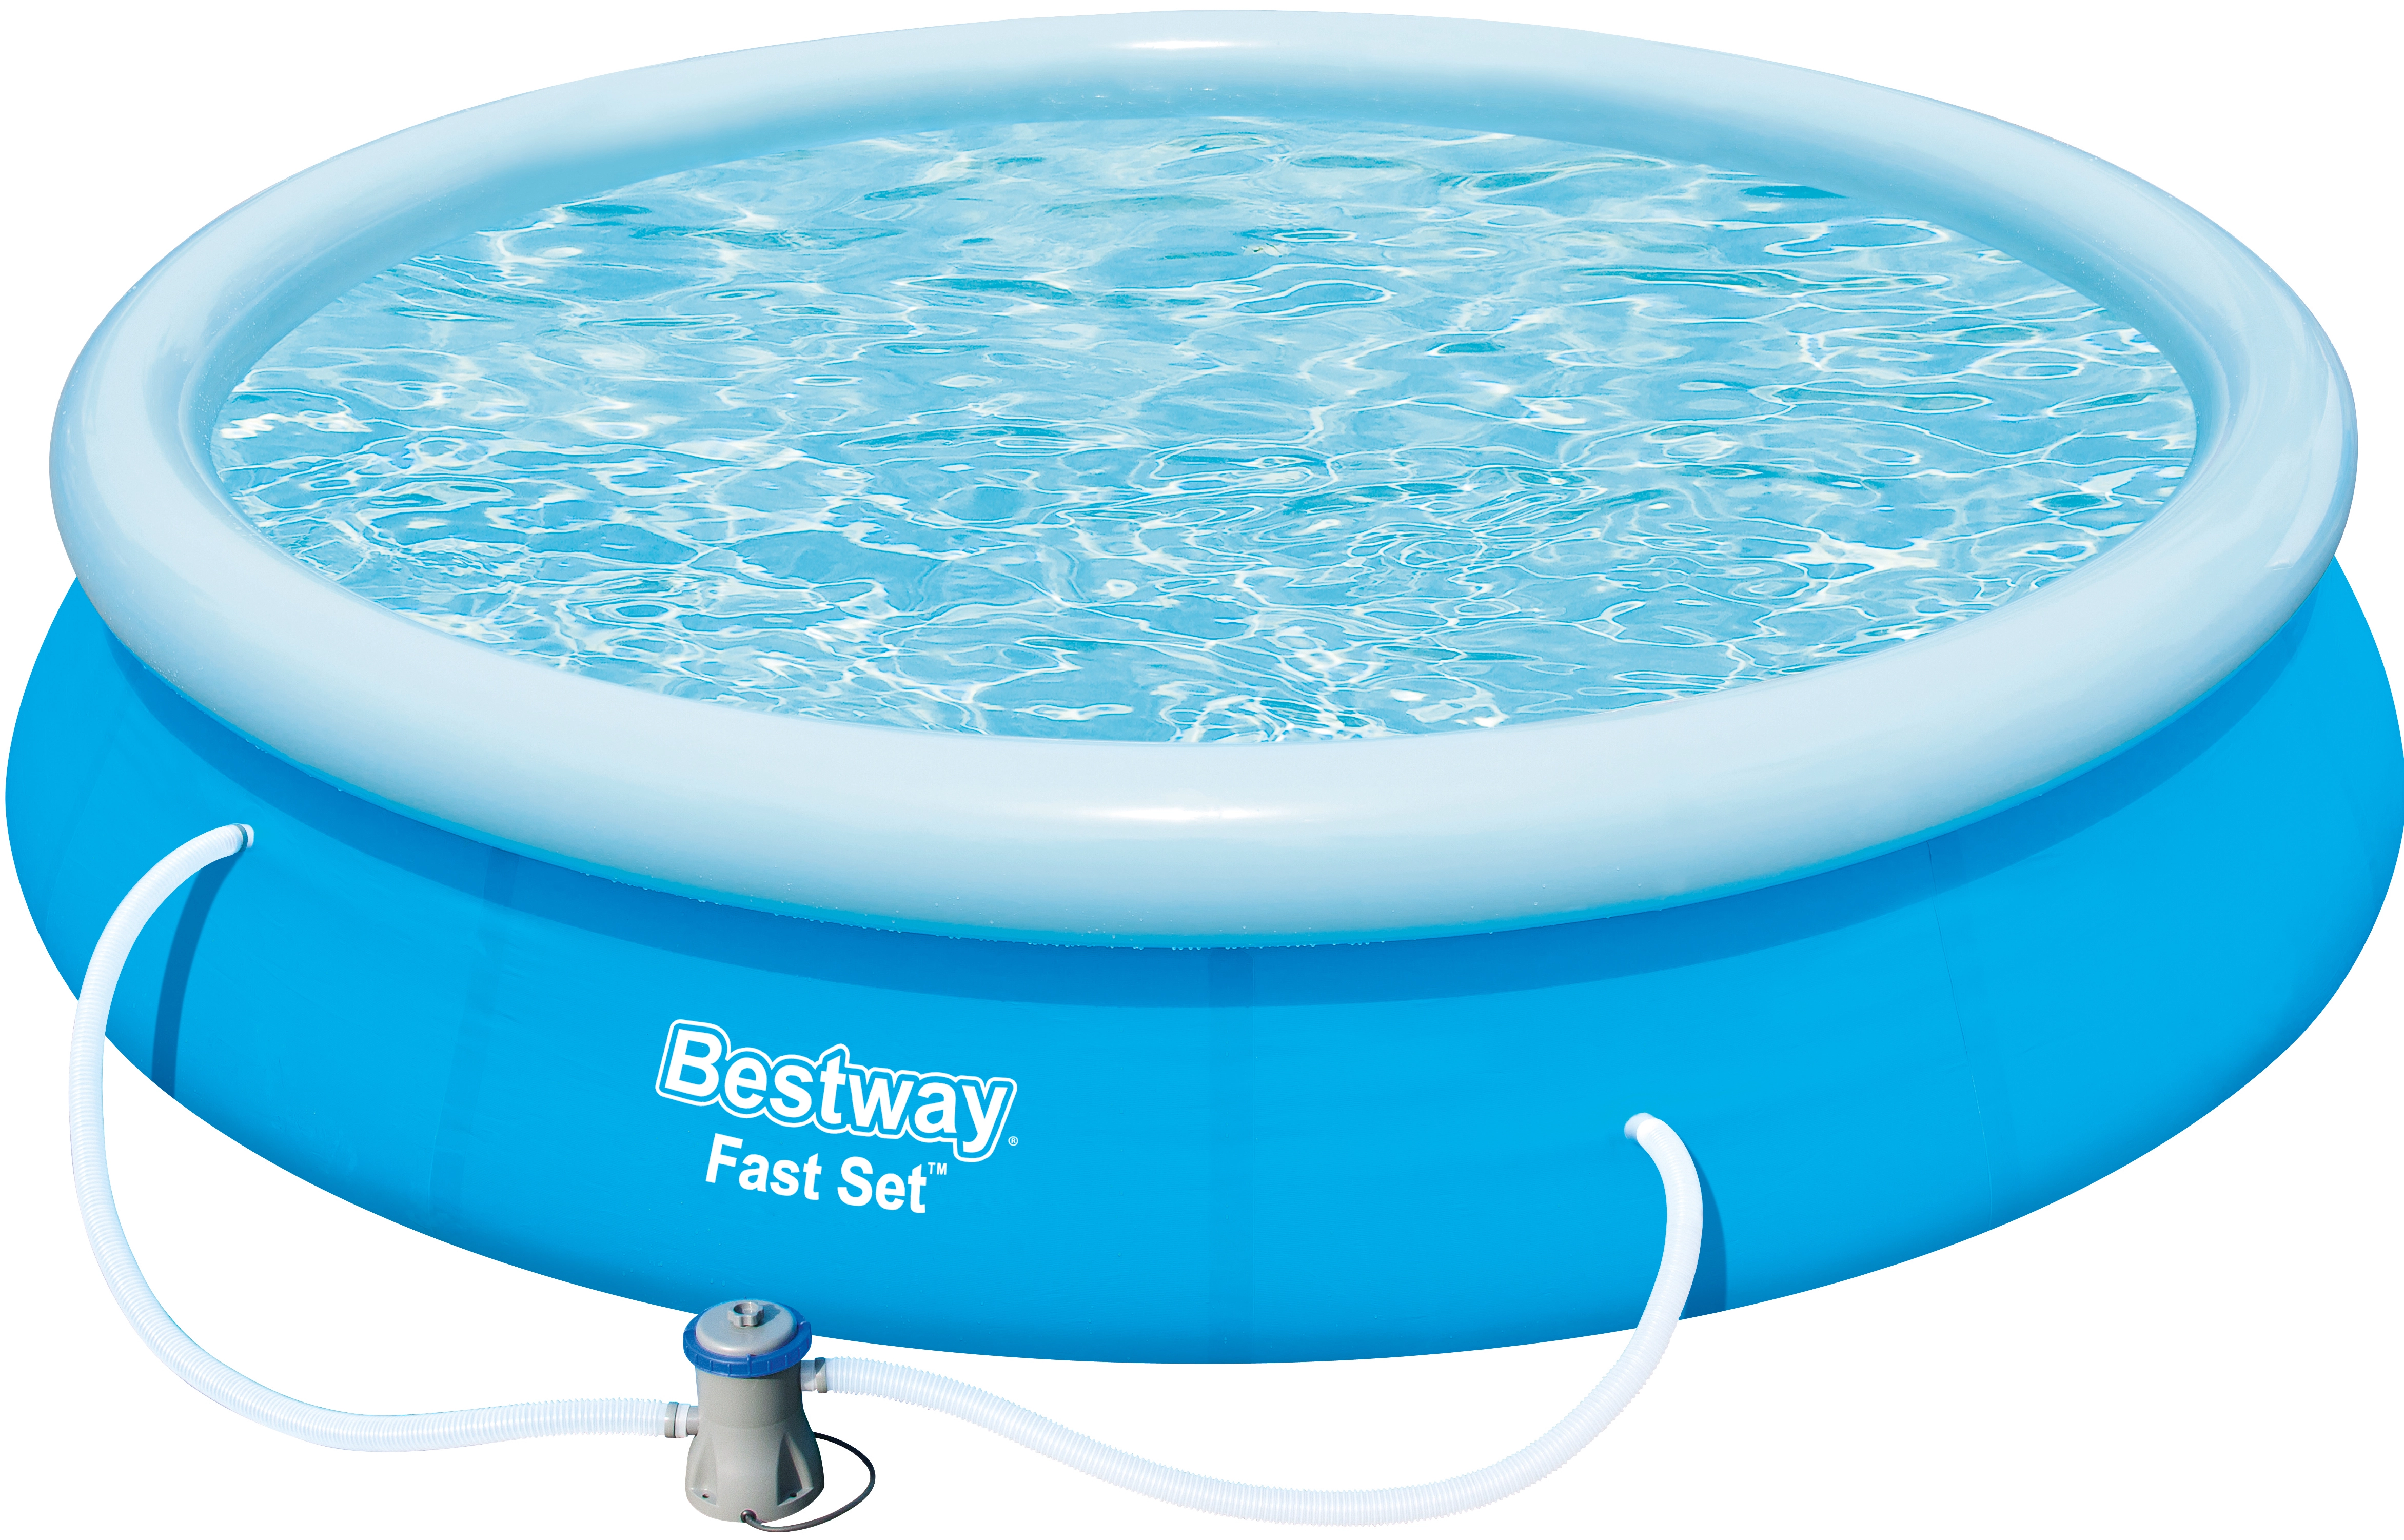 Bestway Bazén Fast Set vč. čerpadla, modrá, pr. 366 x 76 cm